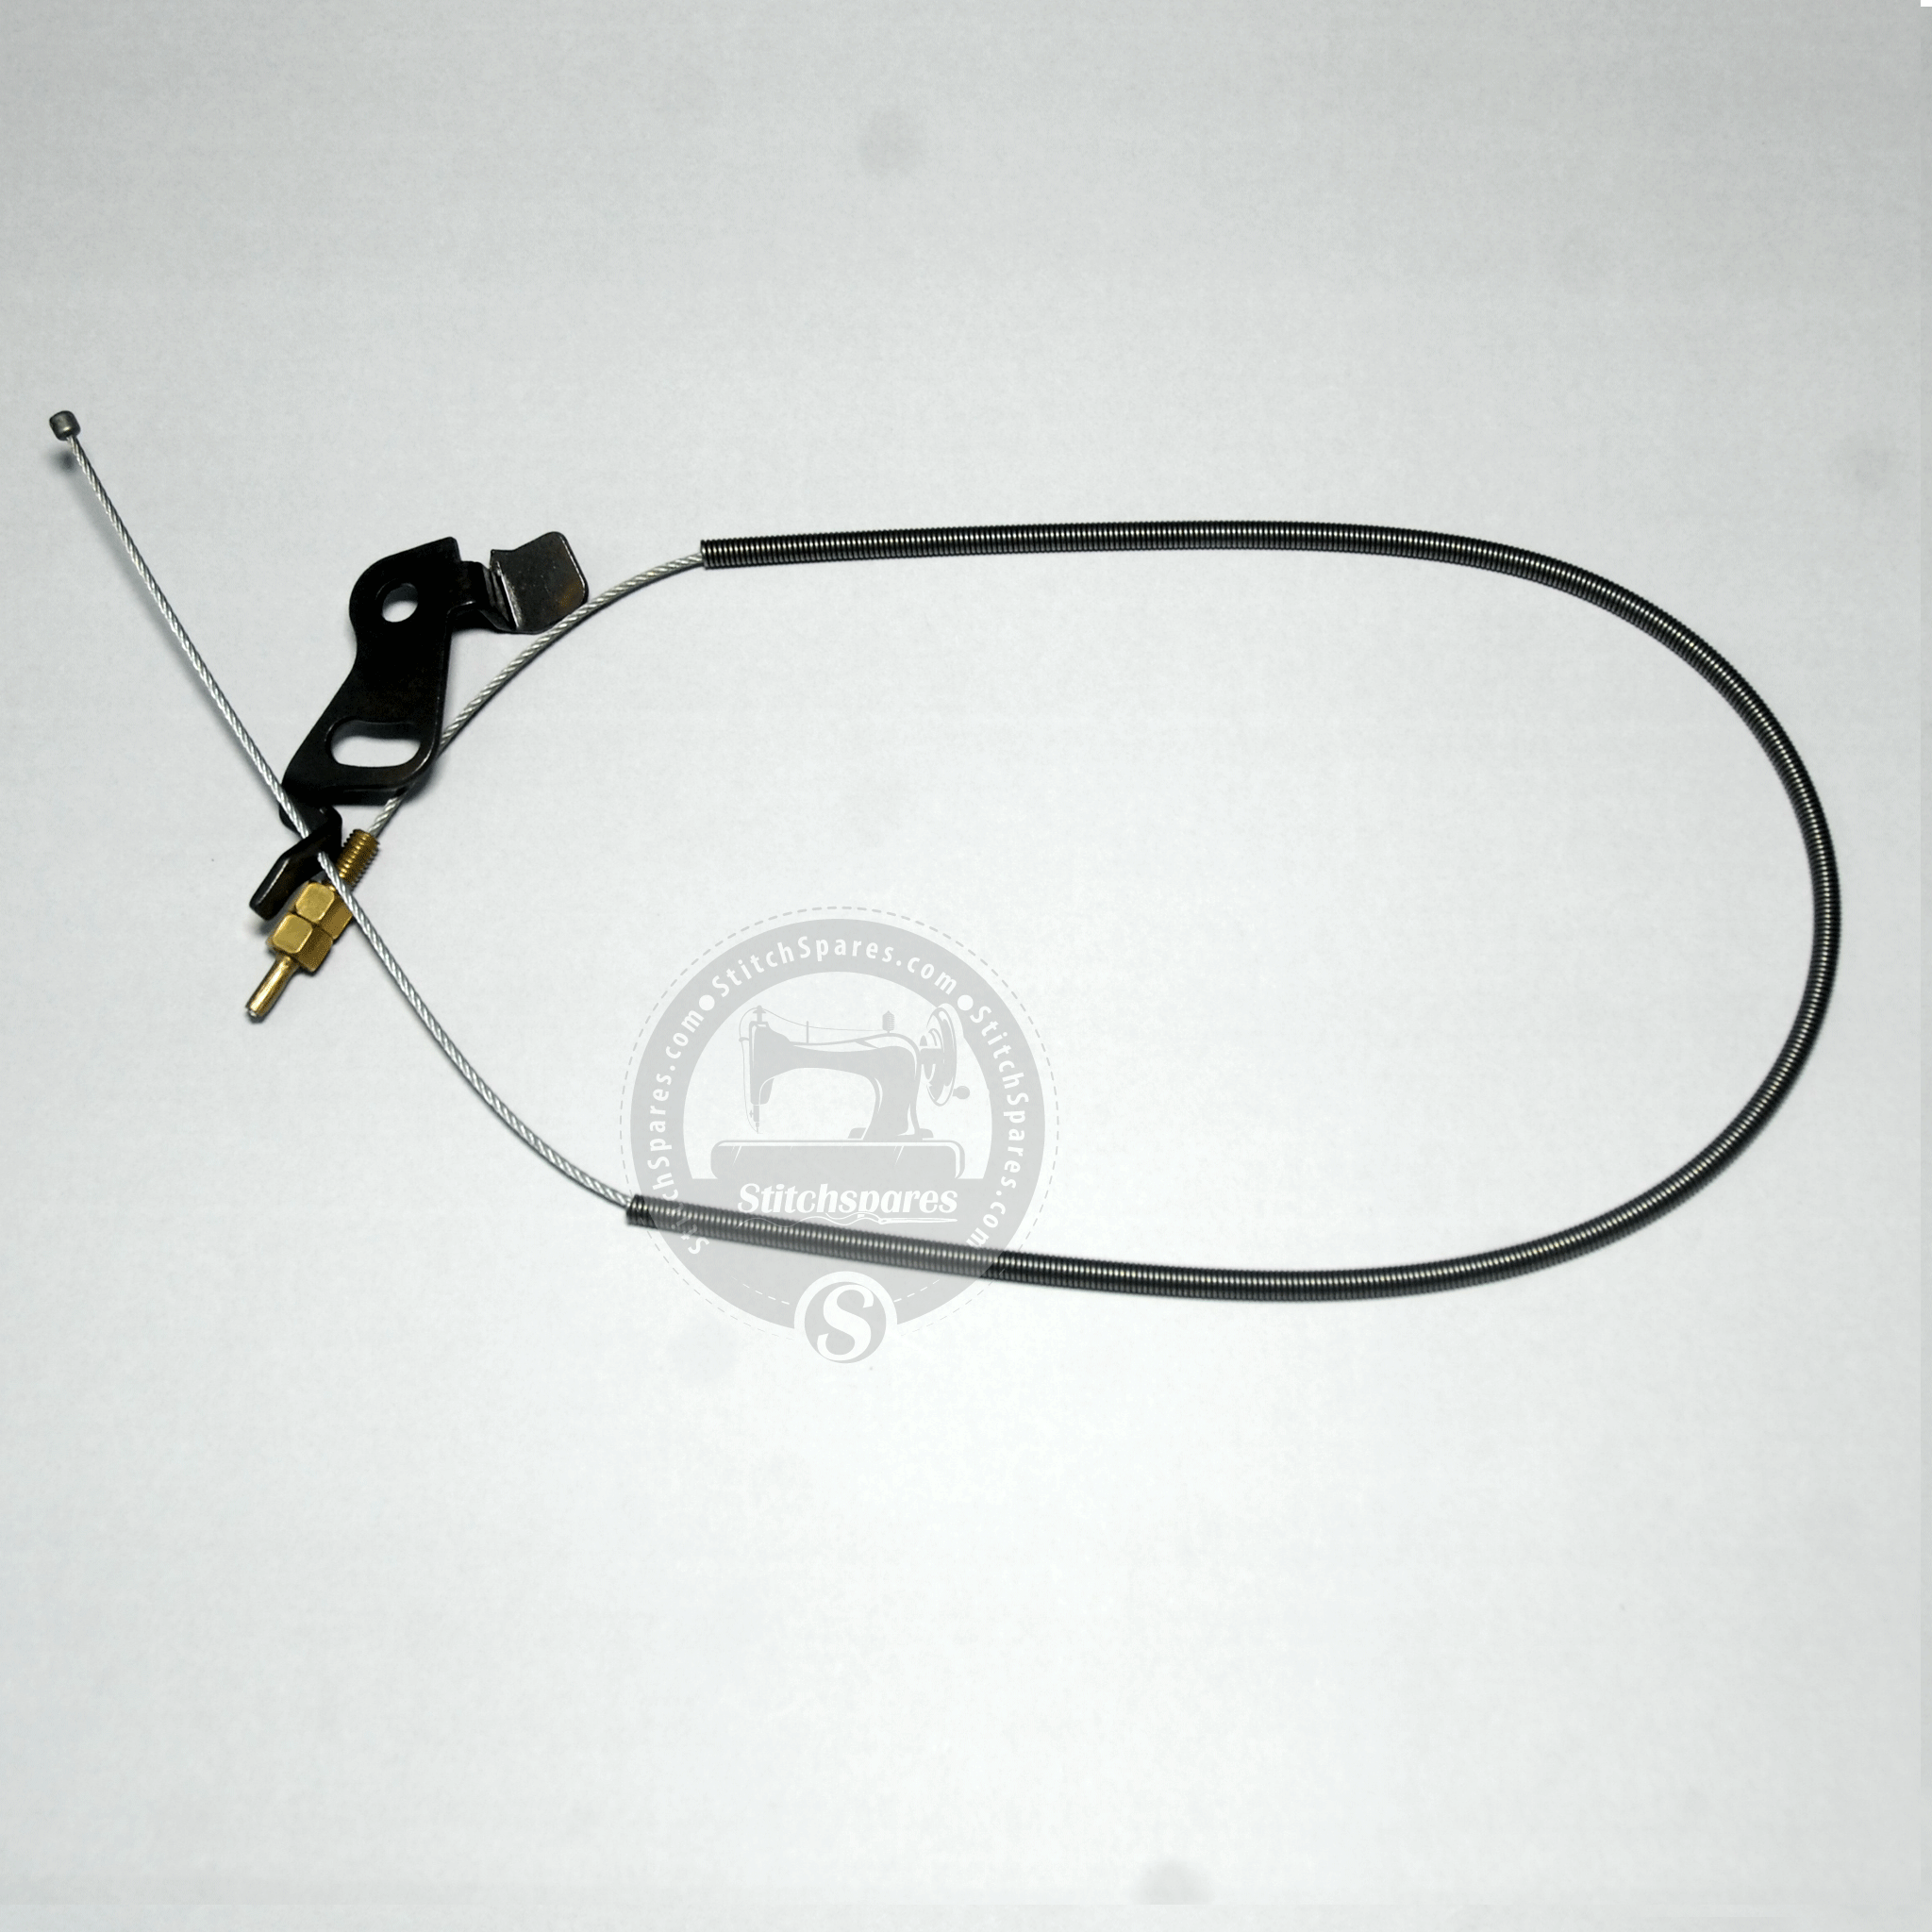 1141206000 componente de techo de tensión de hilo cable de liberación de hilo Asm Jack pieza de repuesto para máquina de coser de punto de bloqueo de aguja única